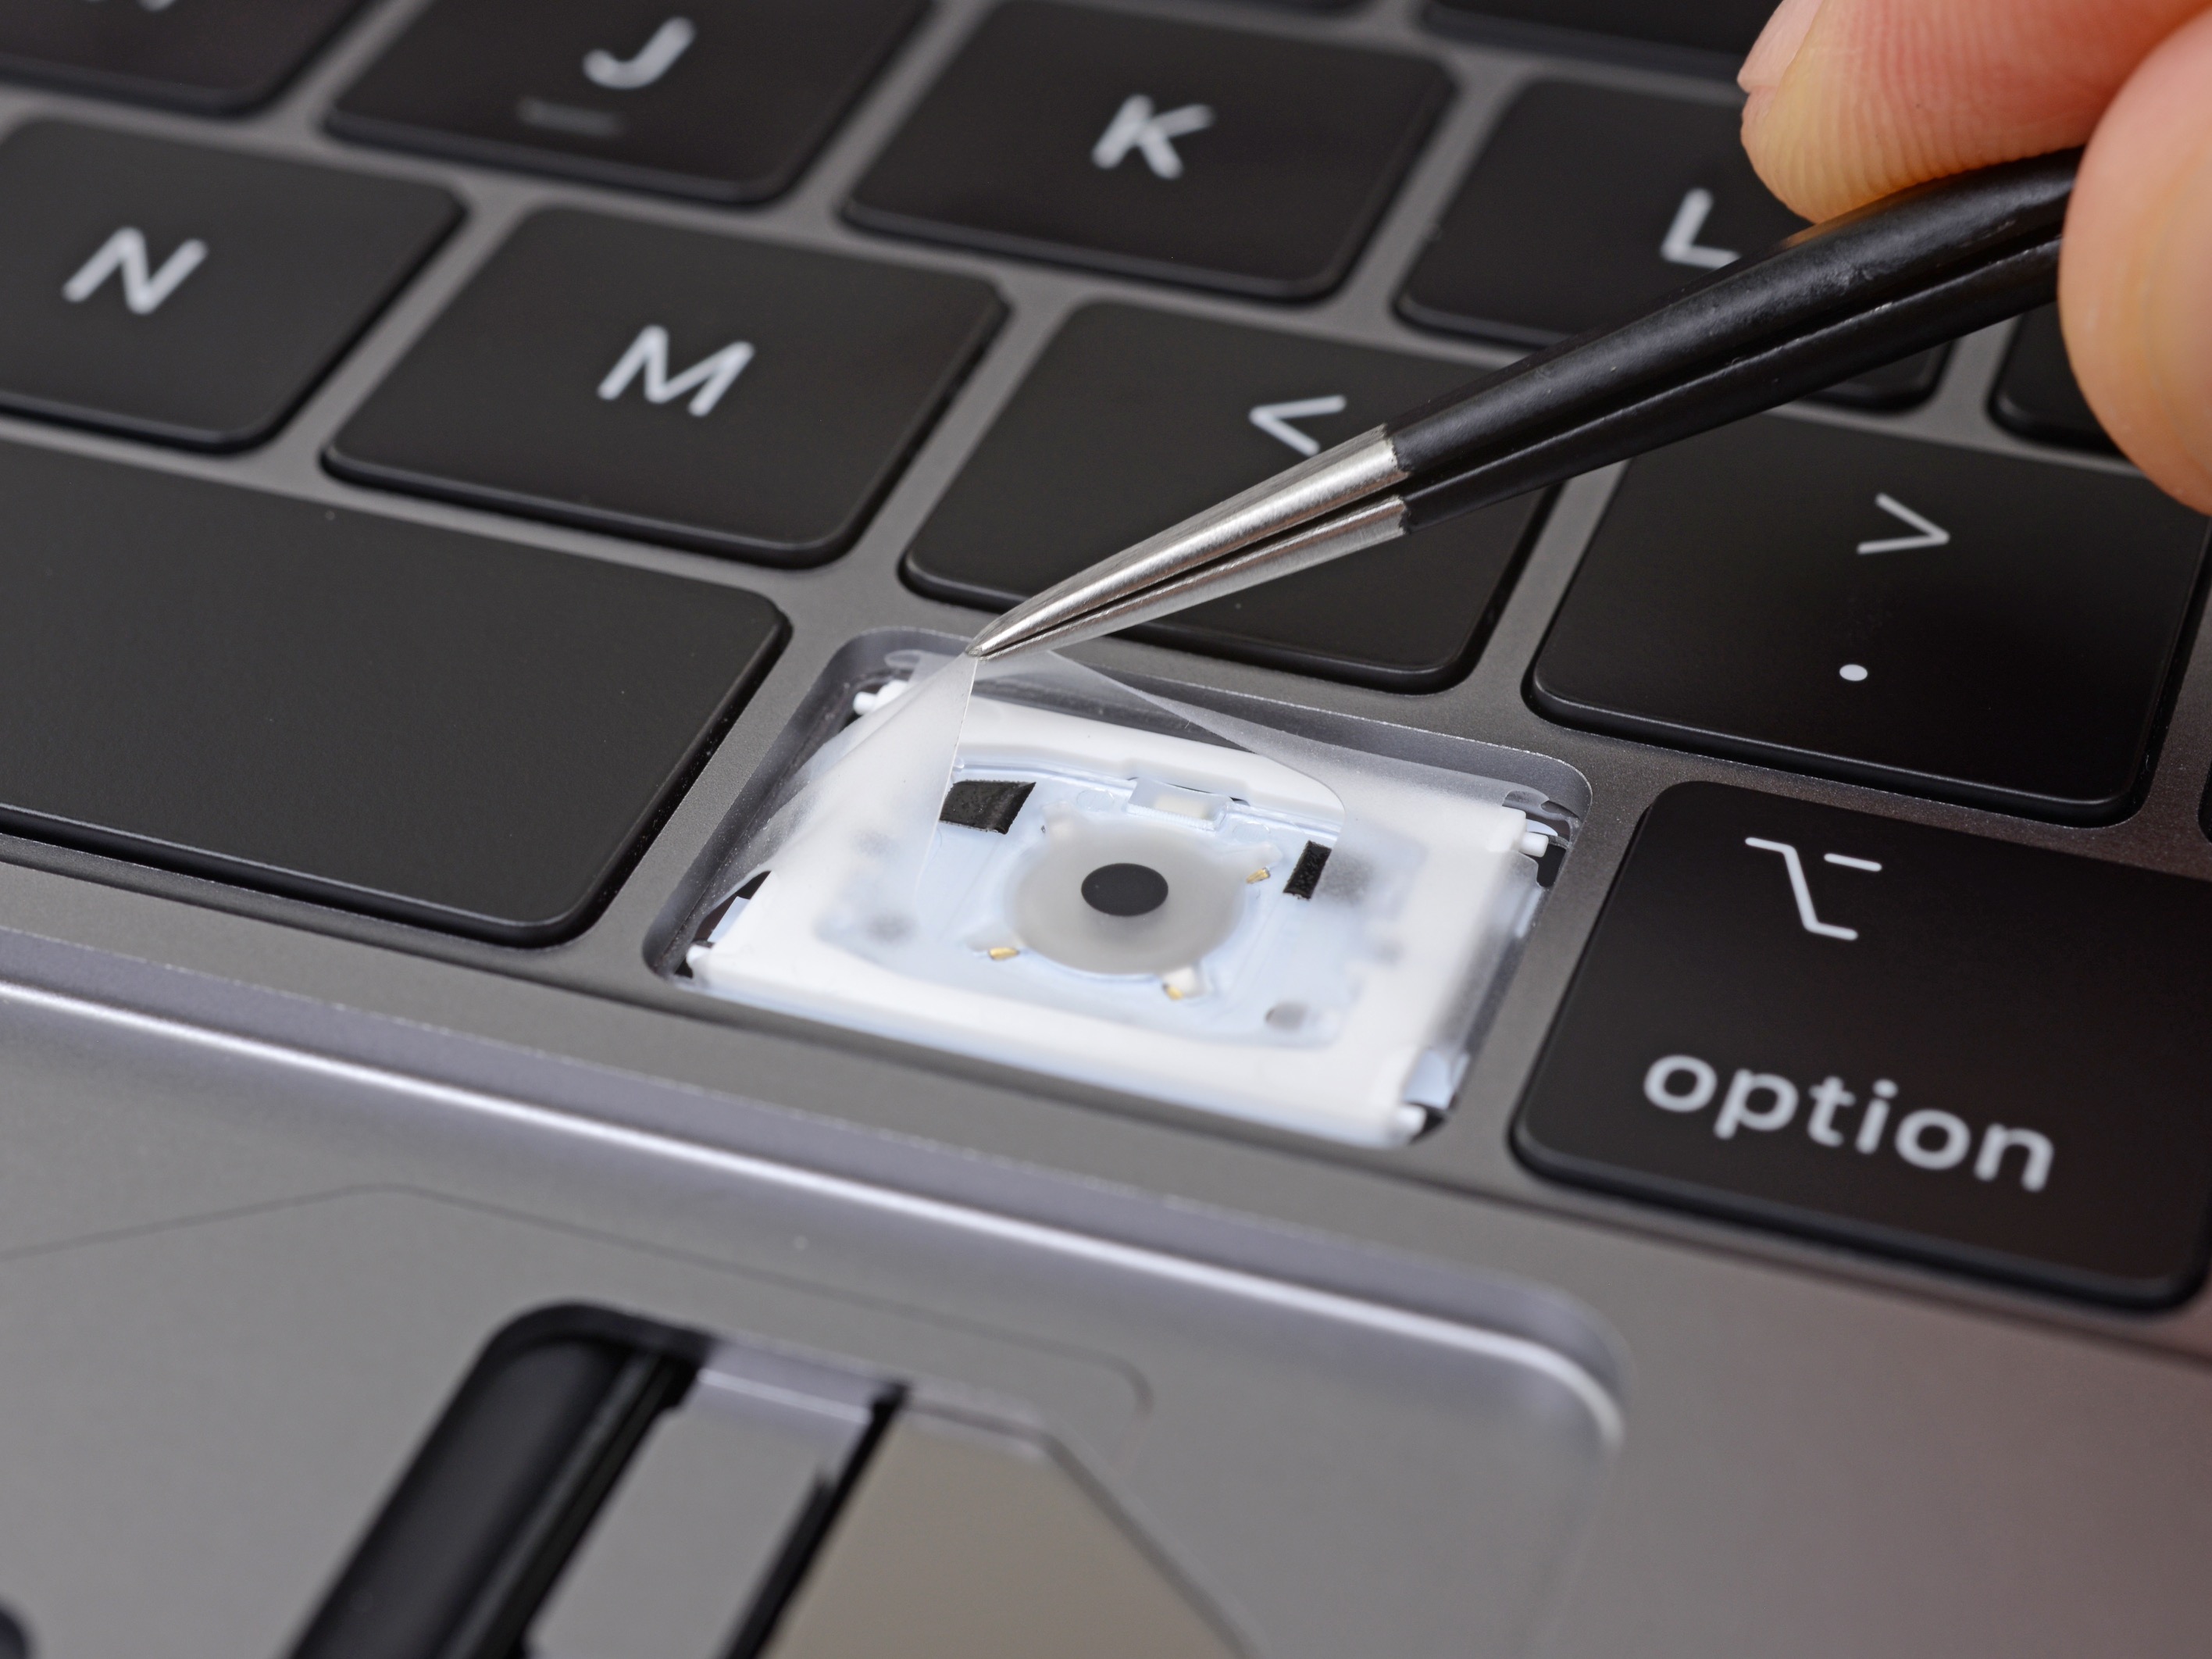 Apple xác nhận lớp màng silicon trong bàn phím bướm mới là để ngăn bụi lọt vào